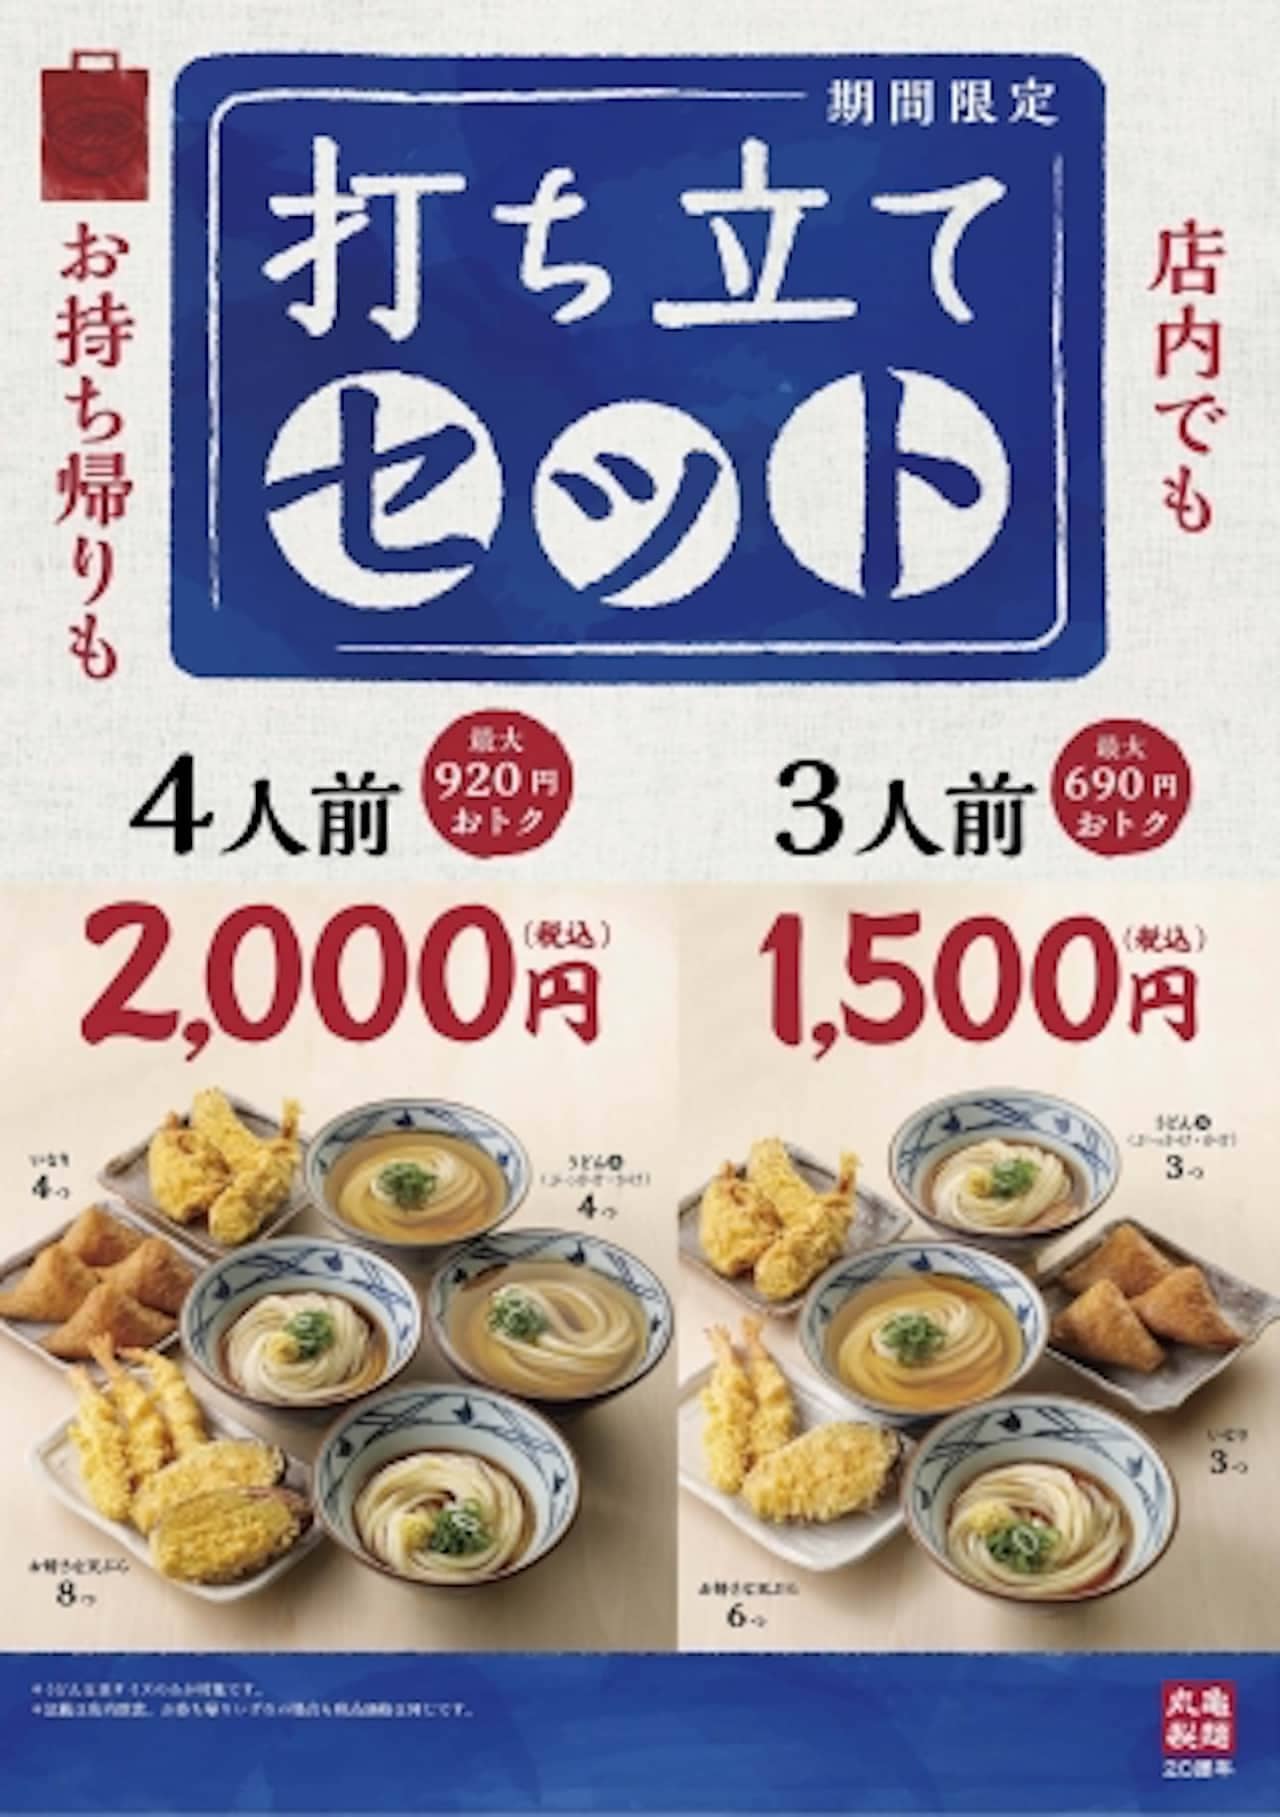 丸亀製麺「打ち立てセット」期間限定で -- うどん・天ぷら・いなりが一緒になったセット [えん食べ]